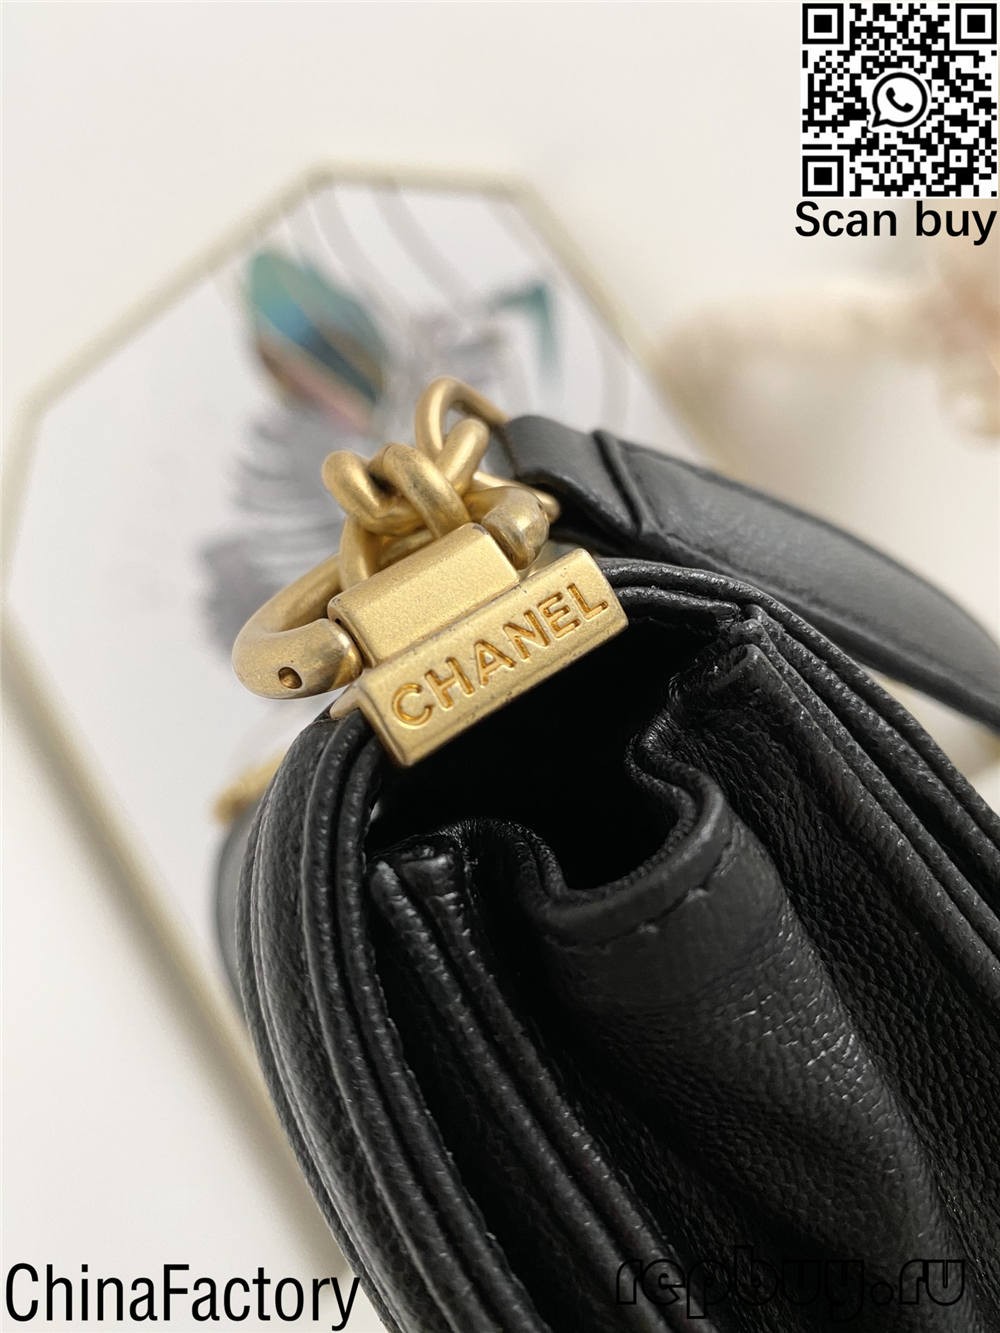 I-Chanel top 12 replica izikhwama ongazithenga (2022 zibuyekeziwe)-Ikhwalithi Engcono Kakhulu I-Fake Louis Vuitton Bag Online Store, i-Replica designer bag ru